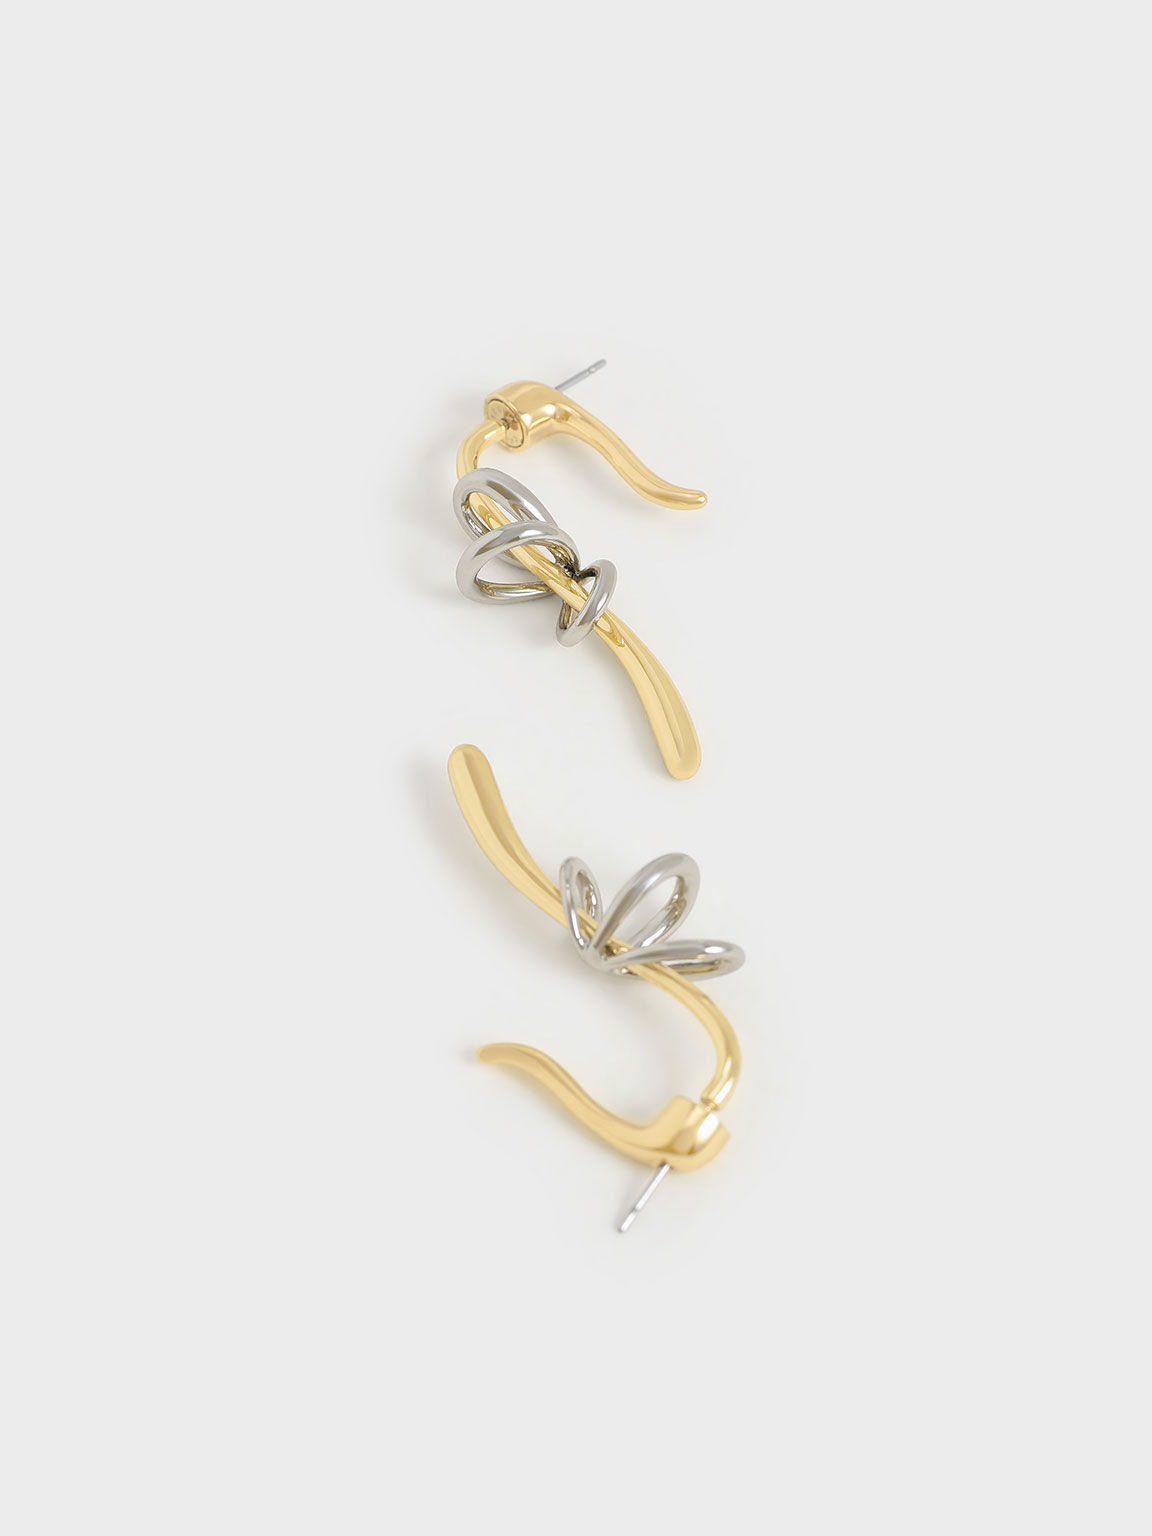 Two-Tone Sculptural Drop Earrings, Gold, hi-res